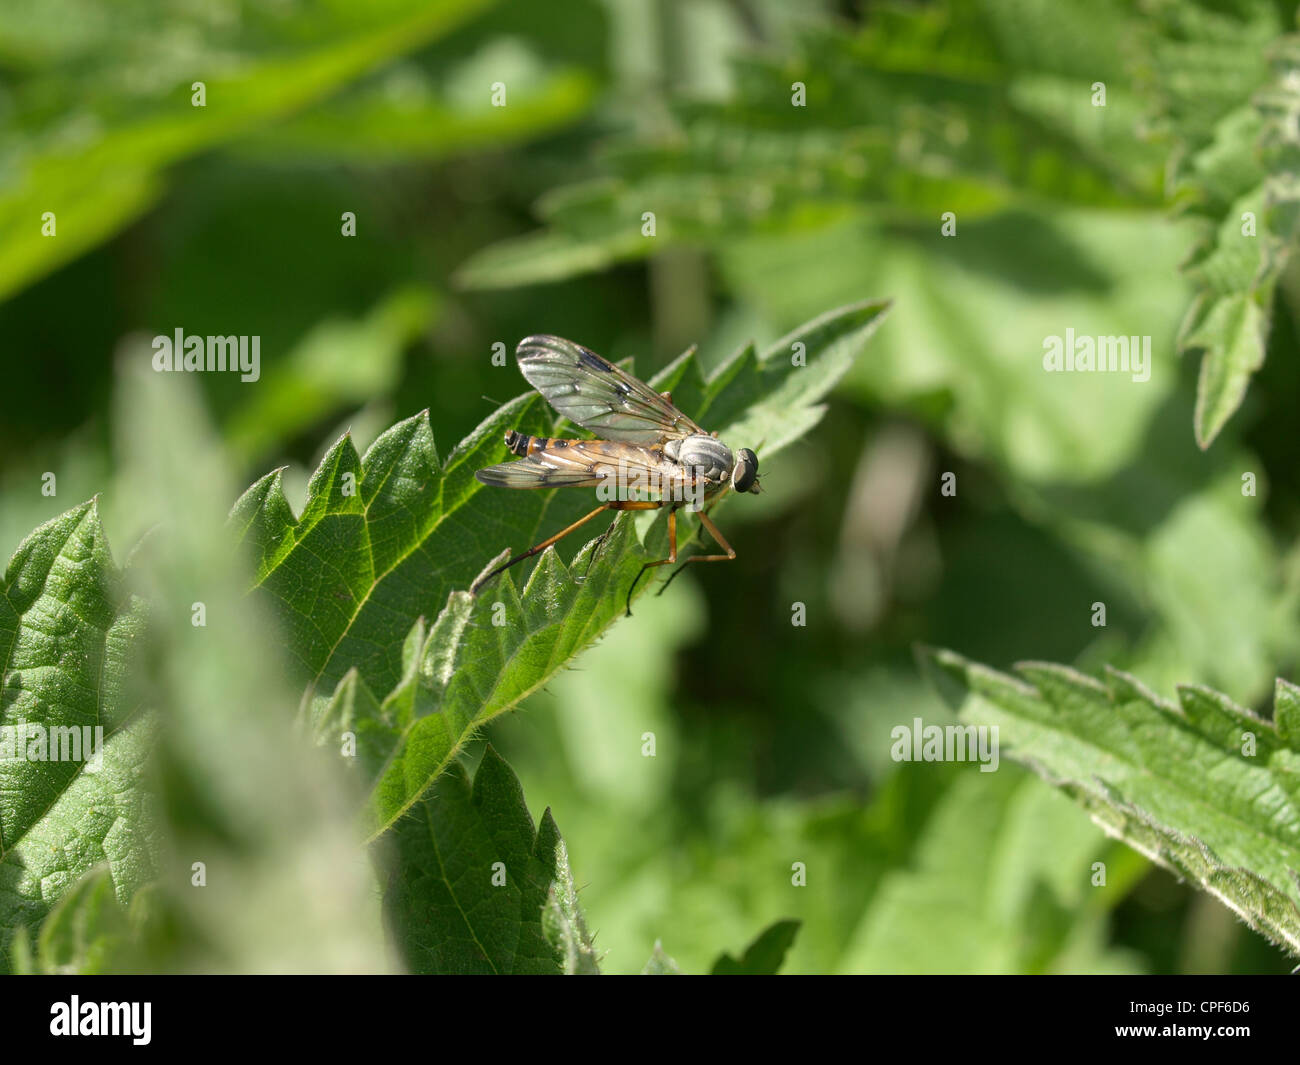 Downlooker Snipefly auf Blatt / Rhagio Scolopaceus / Gemeine Schnepfenfliege Auf Blatt Stockfoto